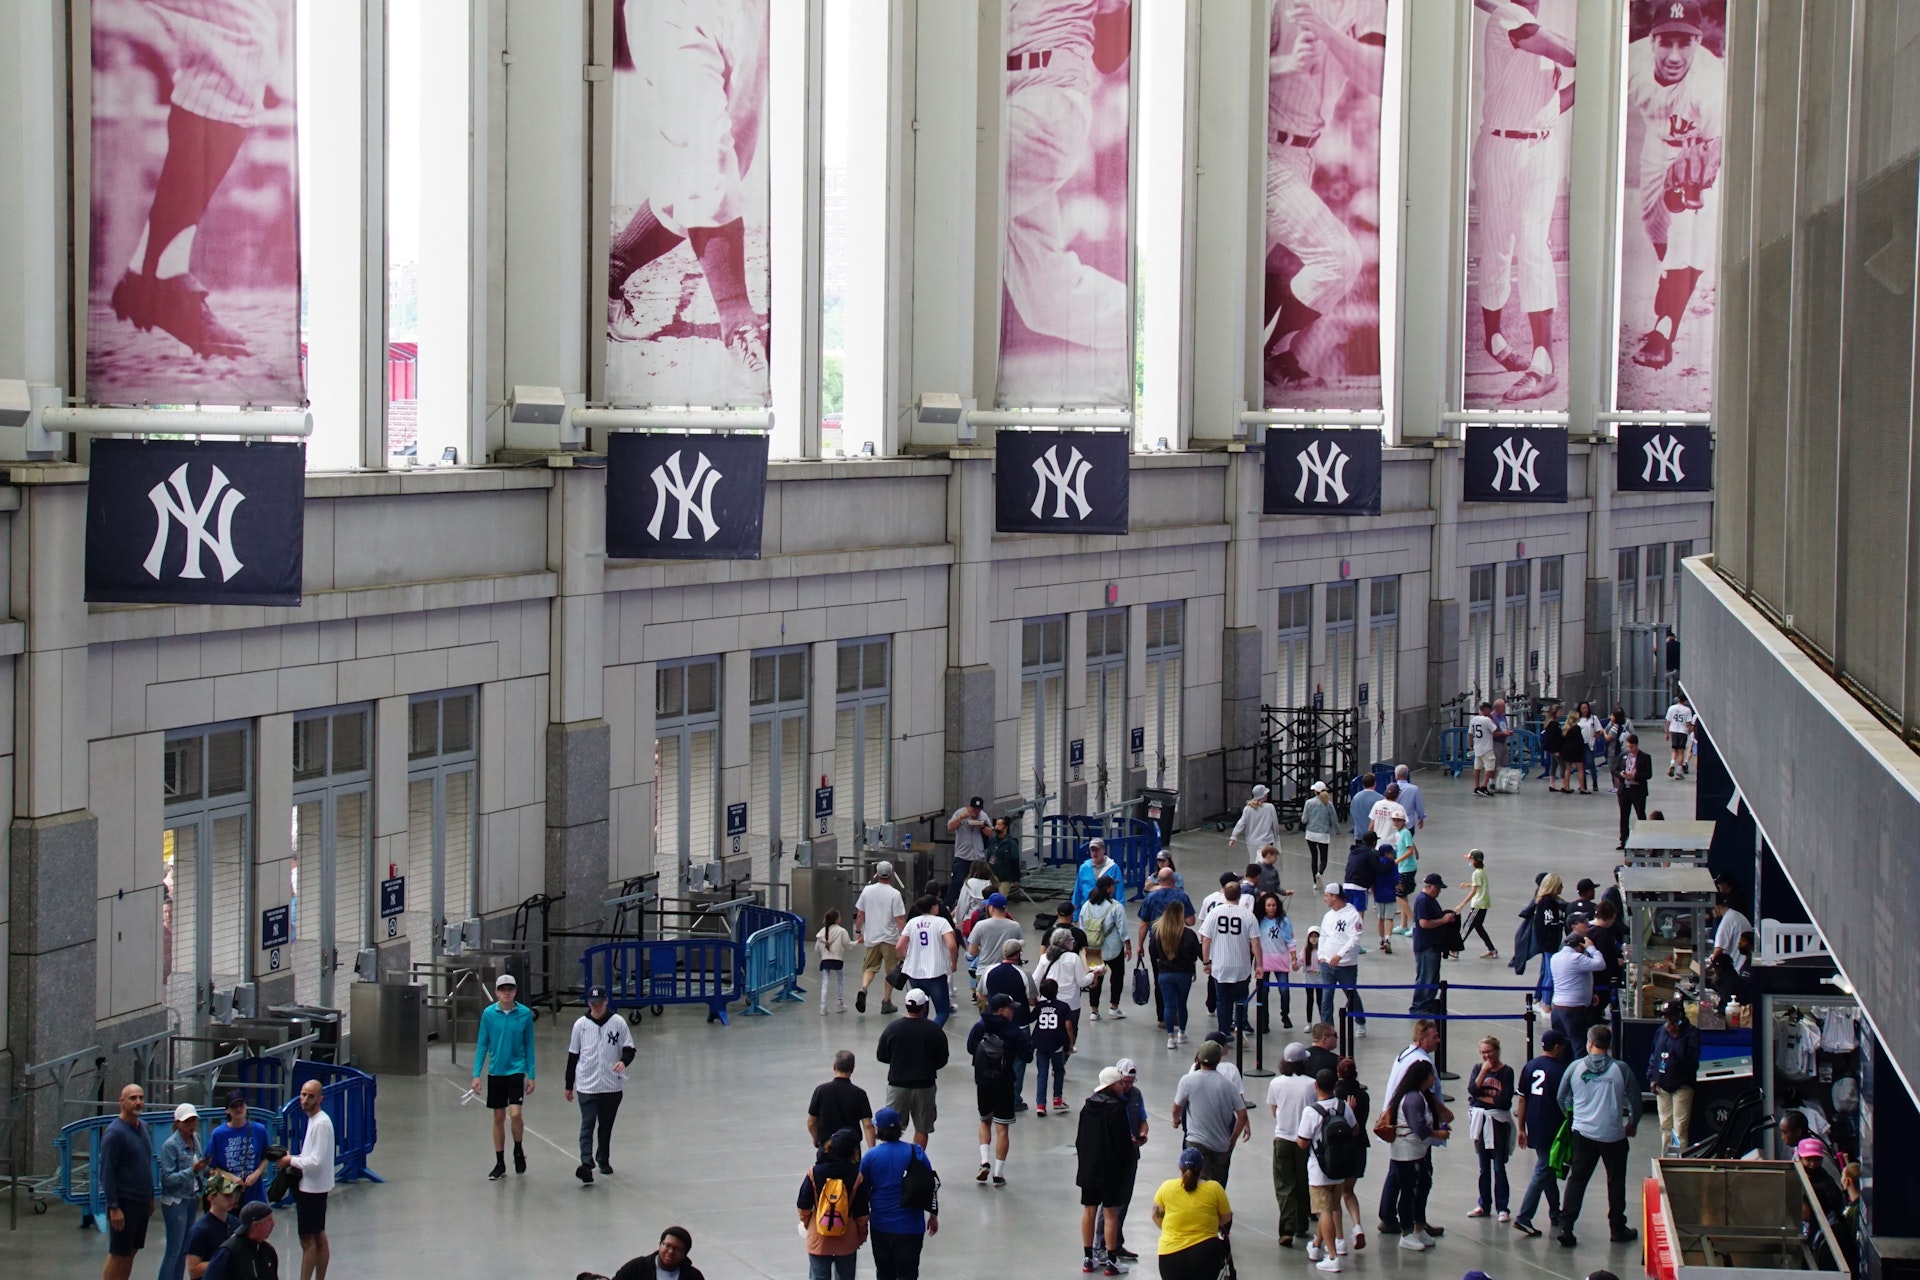  Els Yankees o els Mets: quin equip de la ciutat de Nova York ofereix la millor experiència de beisbol?